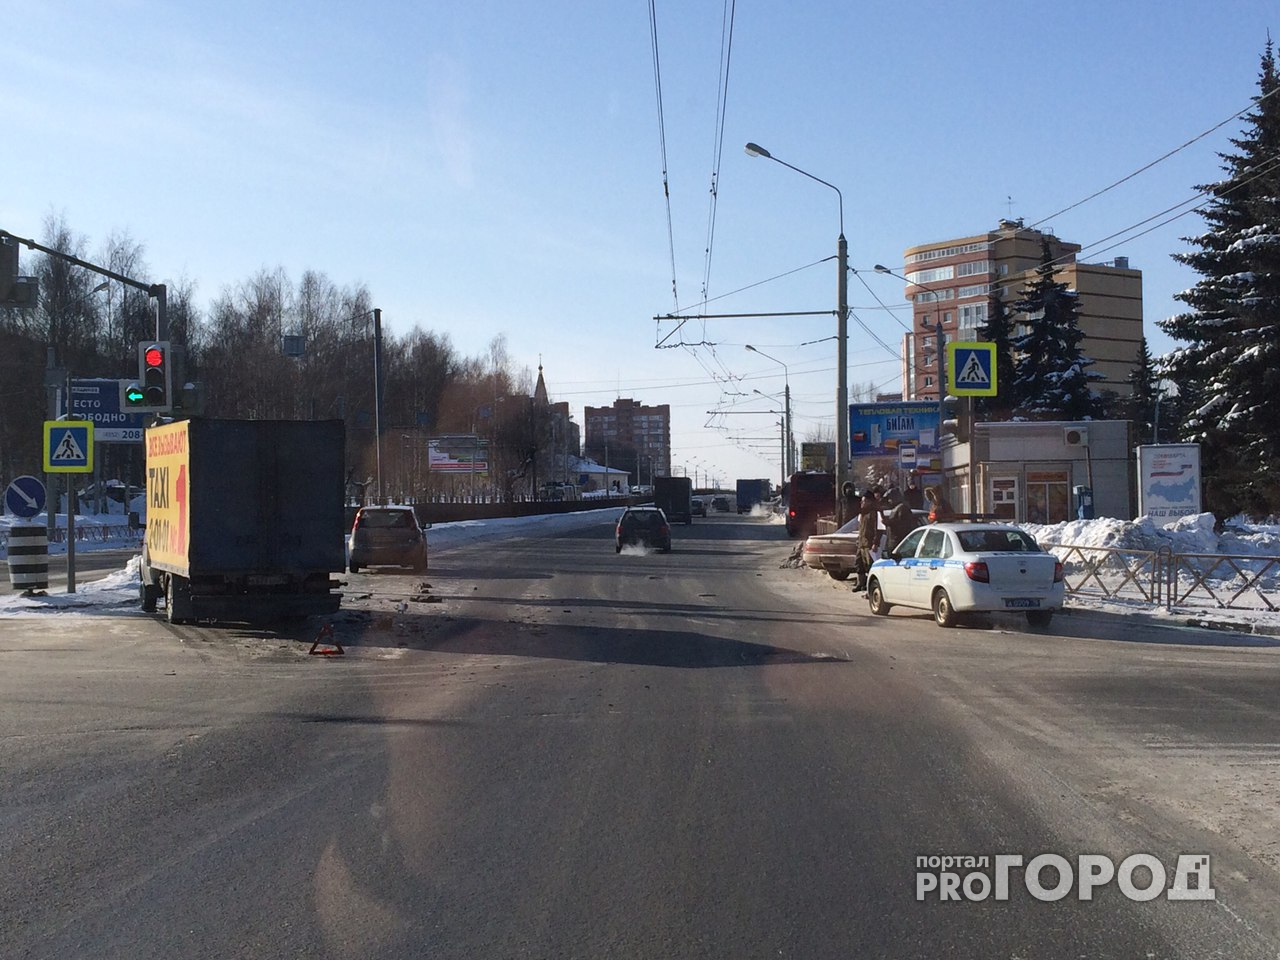 В Ярославле после ДТП автомобиль влетел в остановку с людьми